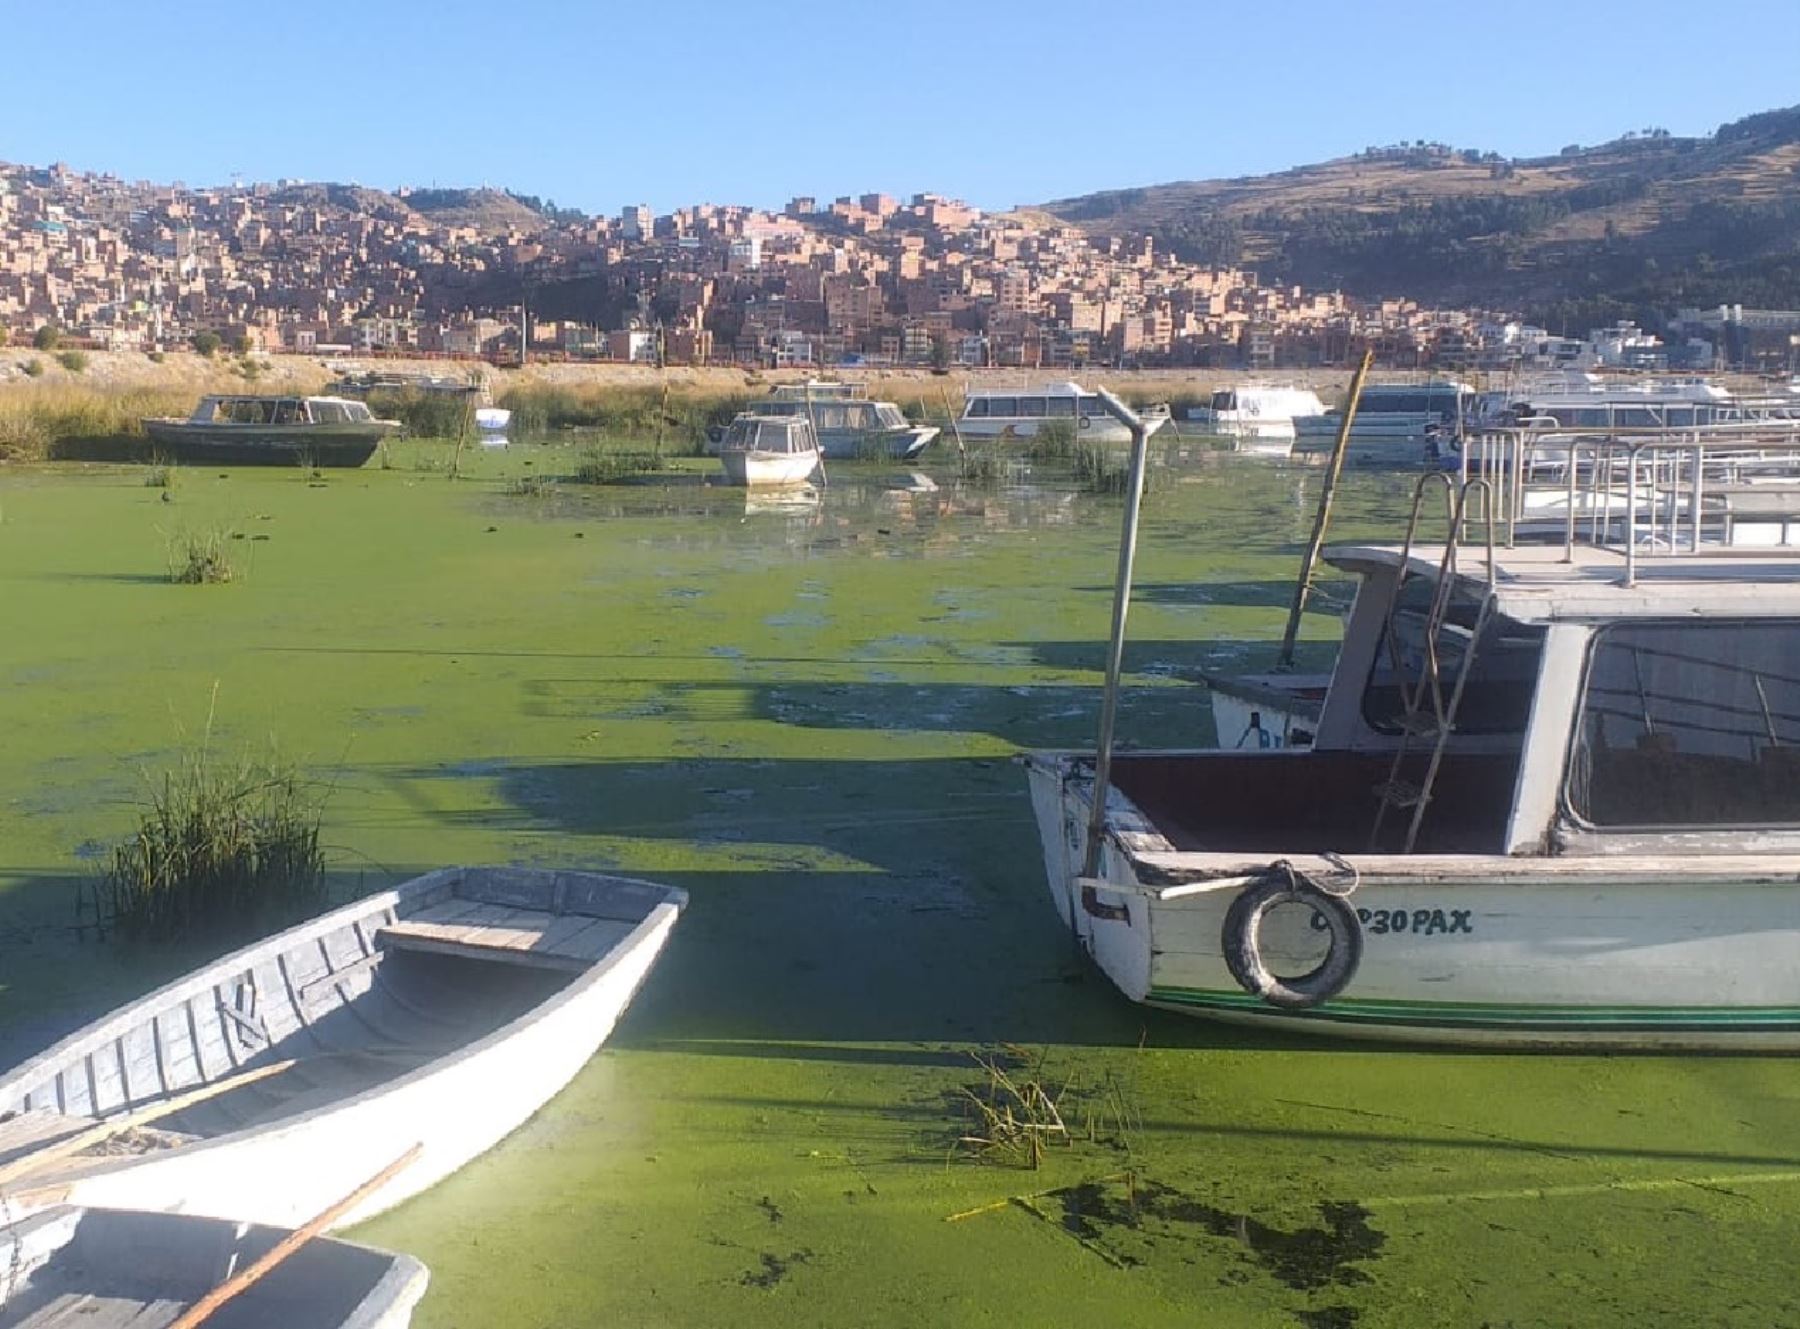 El nivel del agua del lago Titicaca disminuyó en 23 %, confirma el Senamhi Puno.